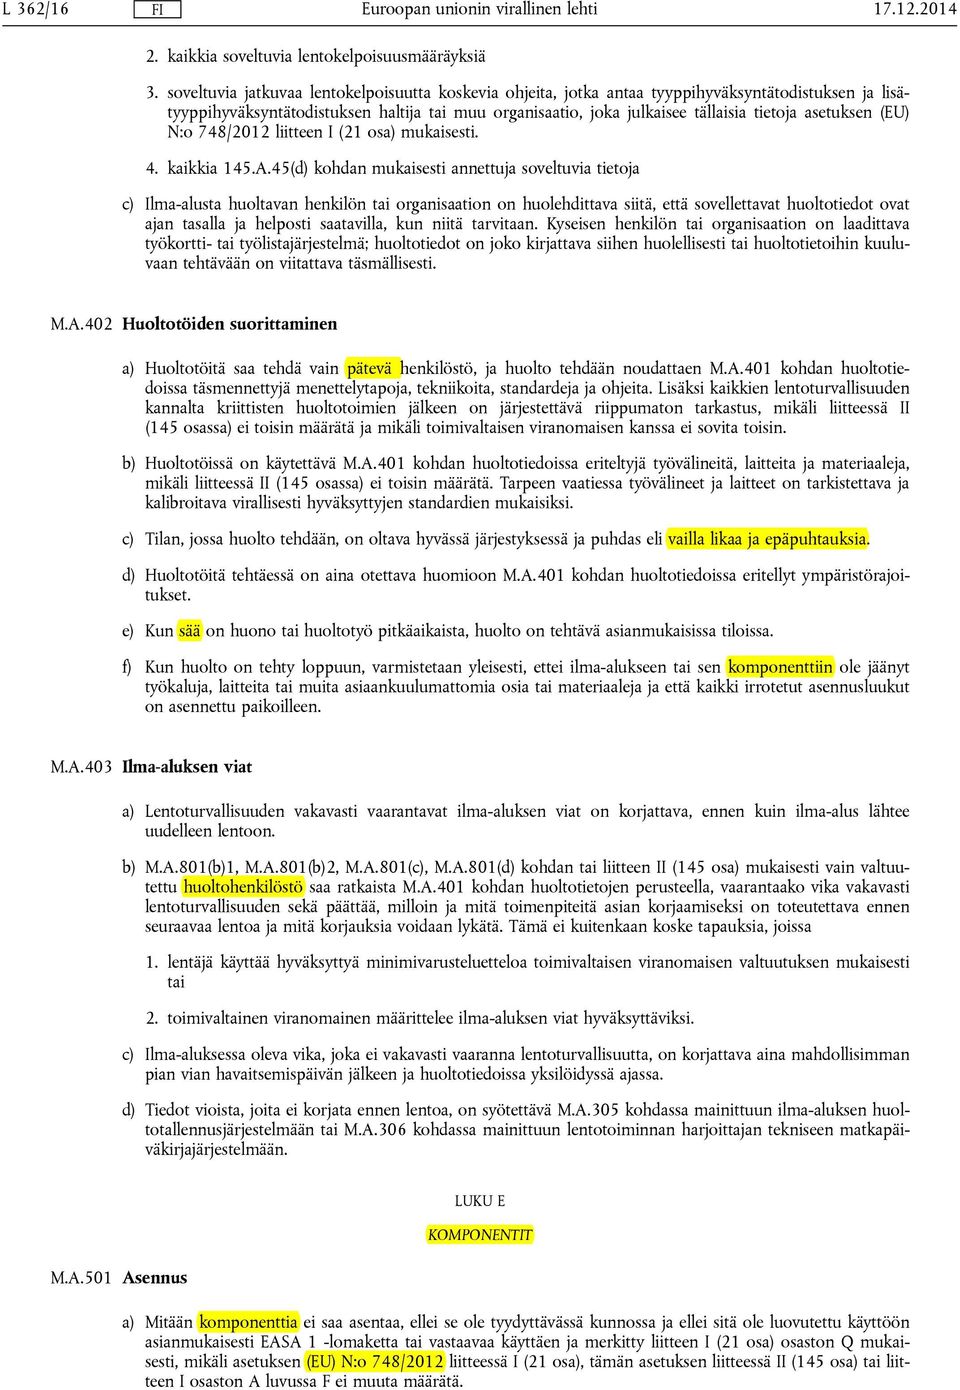 asetuksen (EU) N:o 748/2012 liitteen I (21 osa) mukaisesti. 4. kaikkia 145.A.